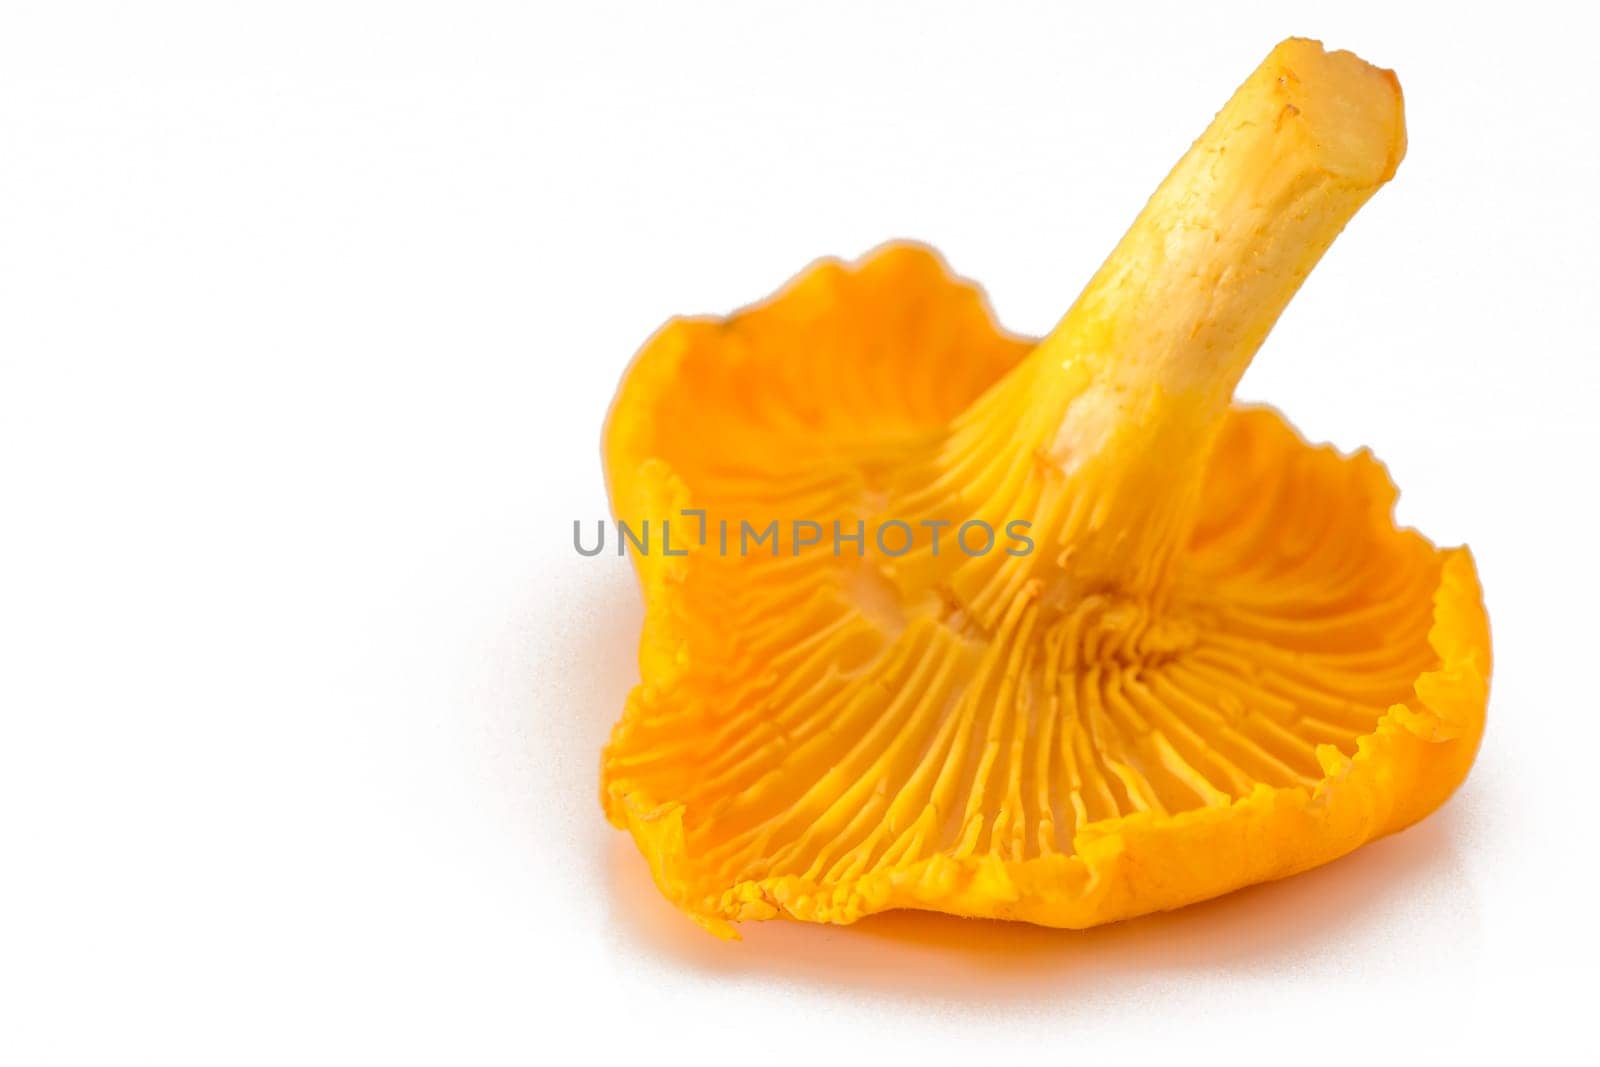 Golden chanterelle mushroom (Cantharellus cibarius) 3